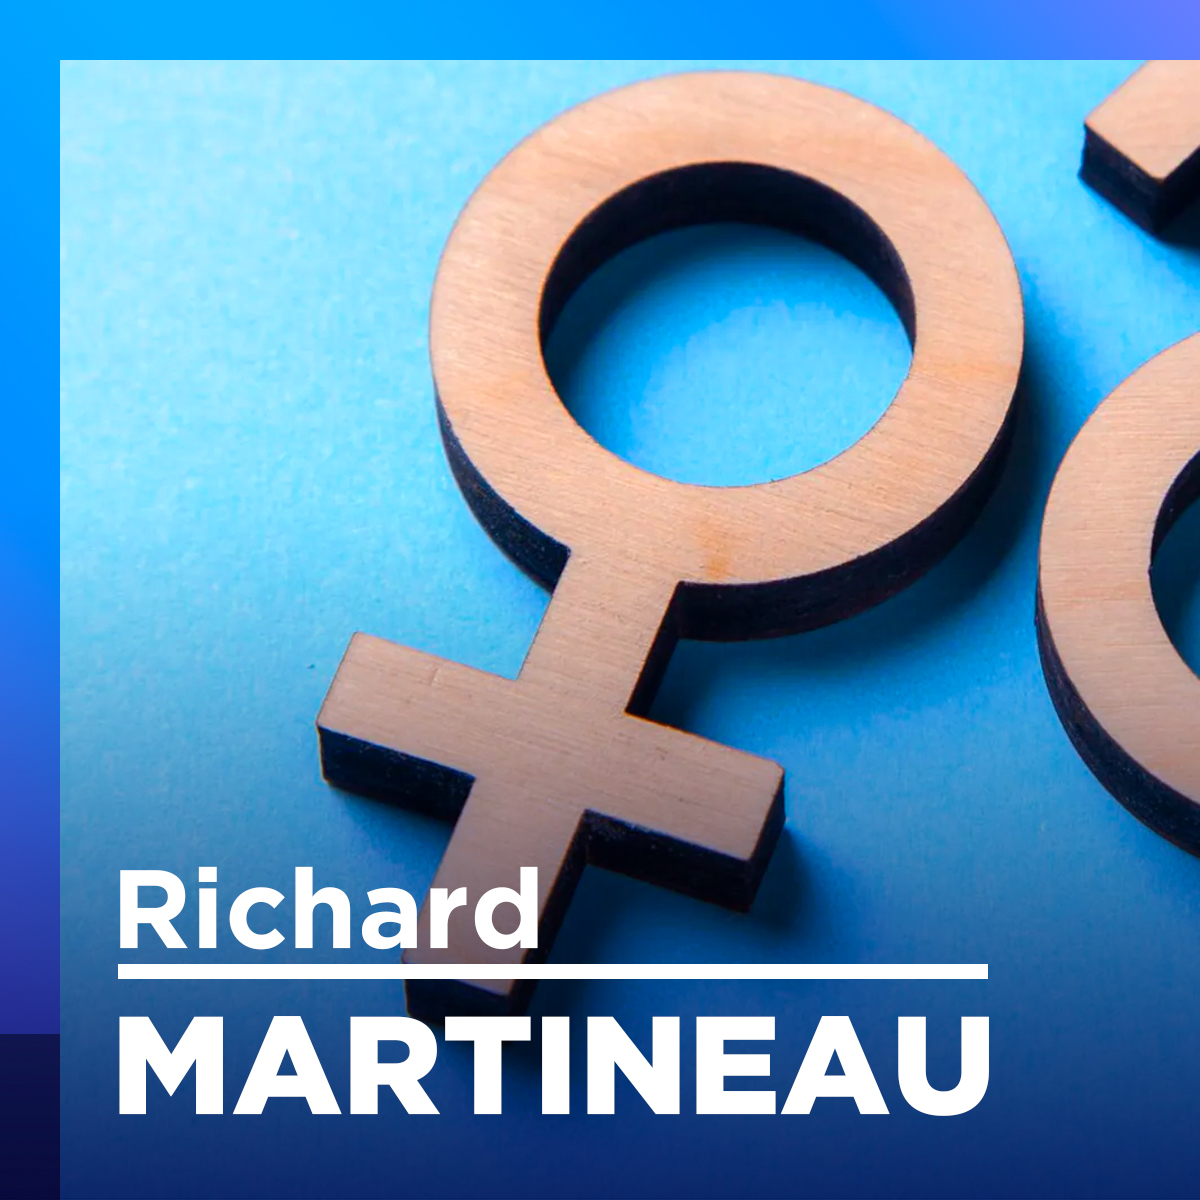 «C'est les hommes le sexe faible», dit Martineau